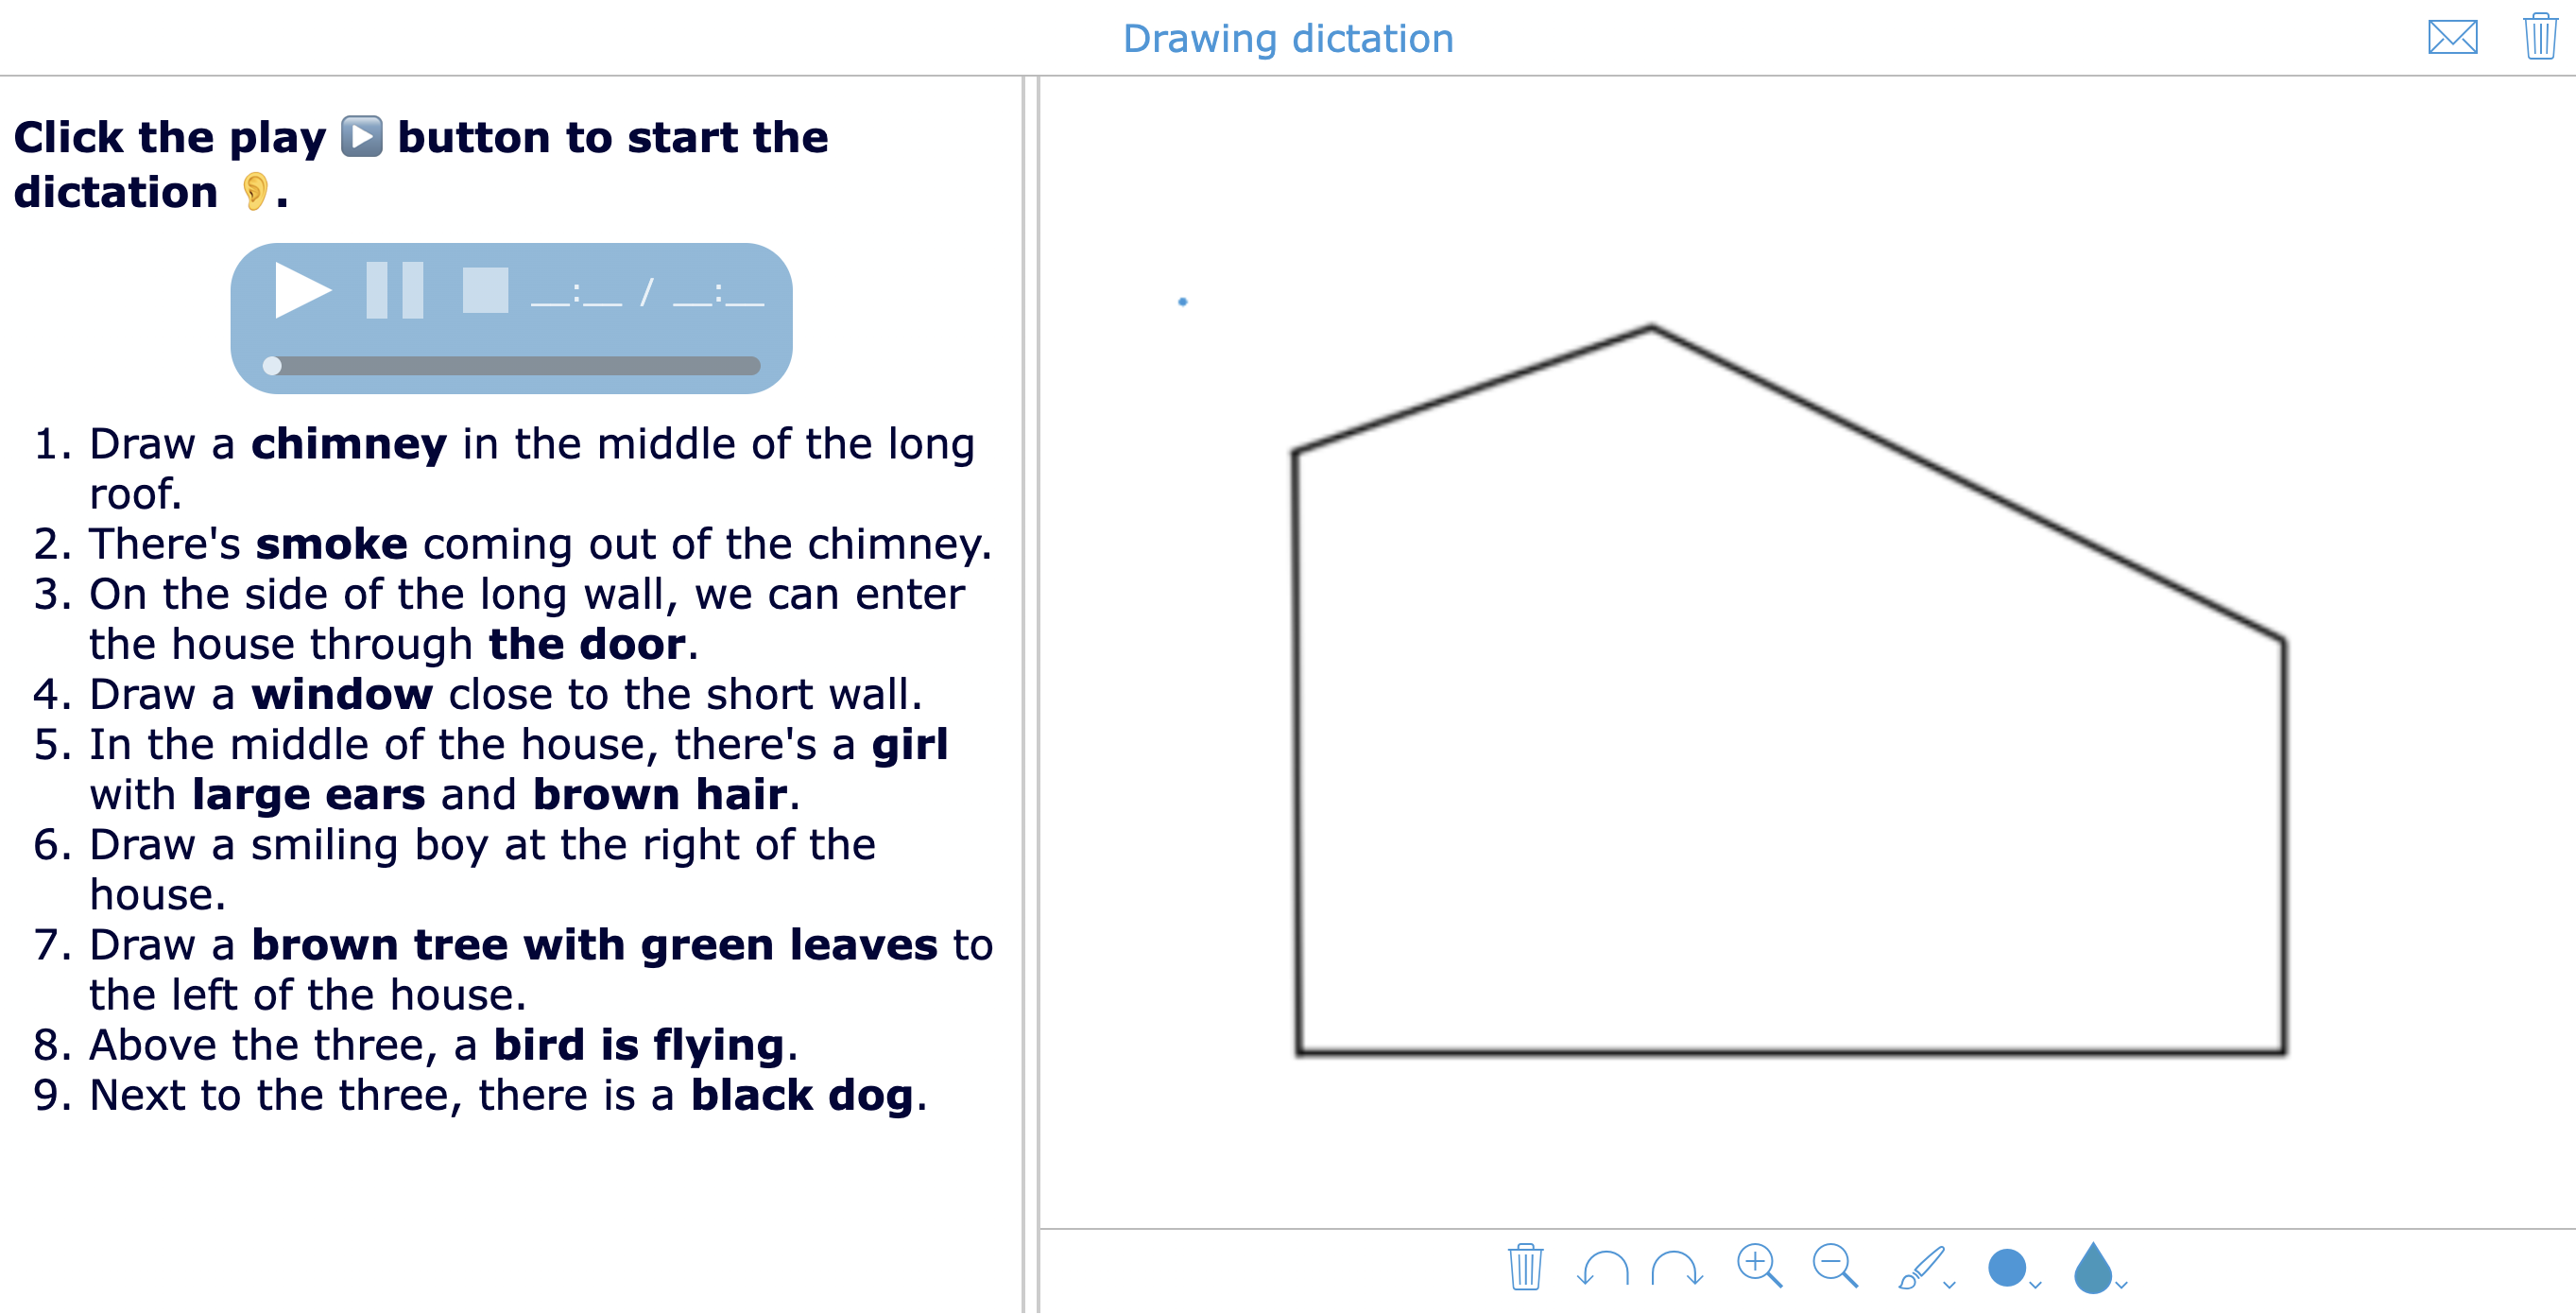 Drawing dictation - Kindergarten activity